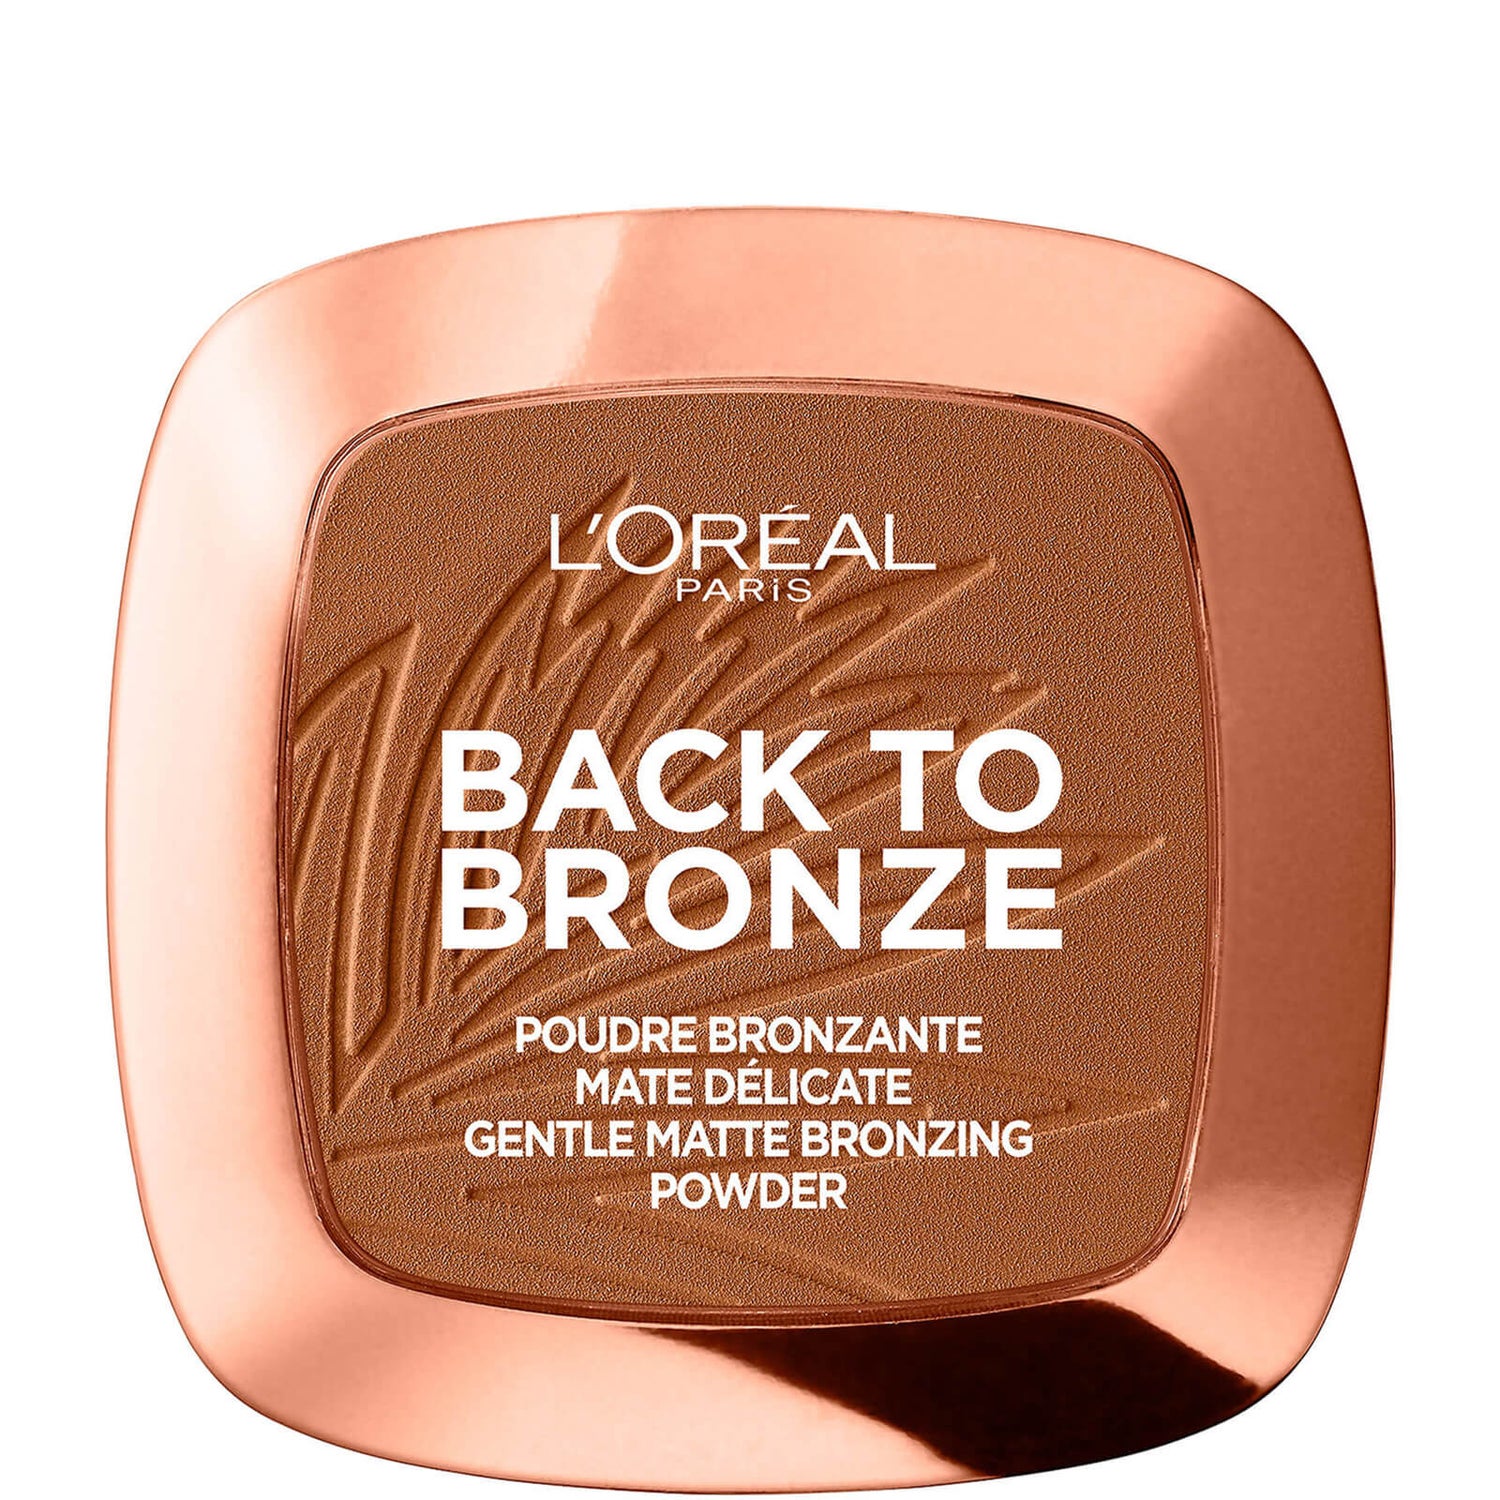 Poudre Bronzante L'Oréal Paris – Back To Bronze 9 g